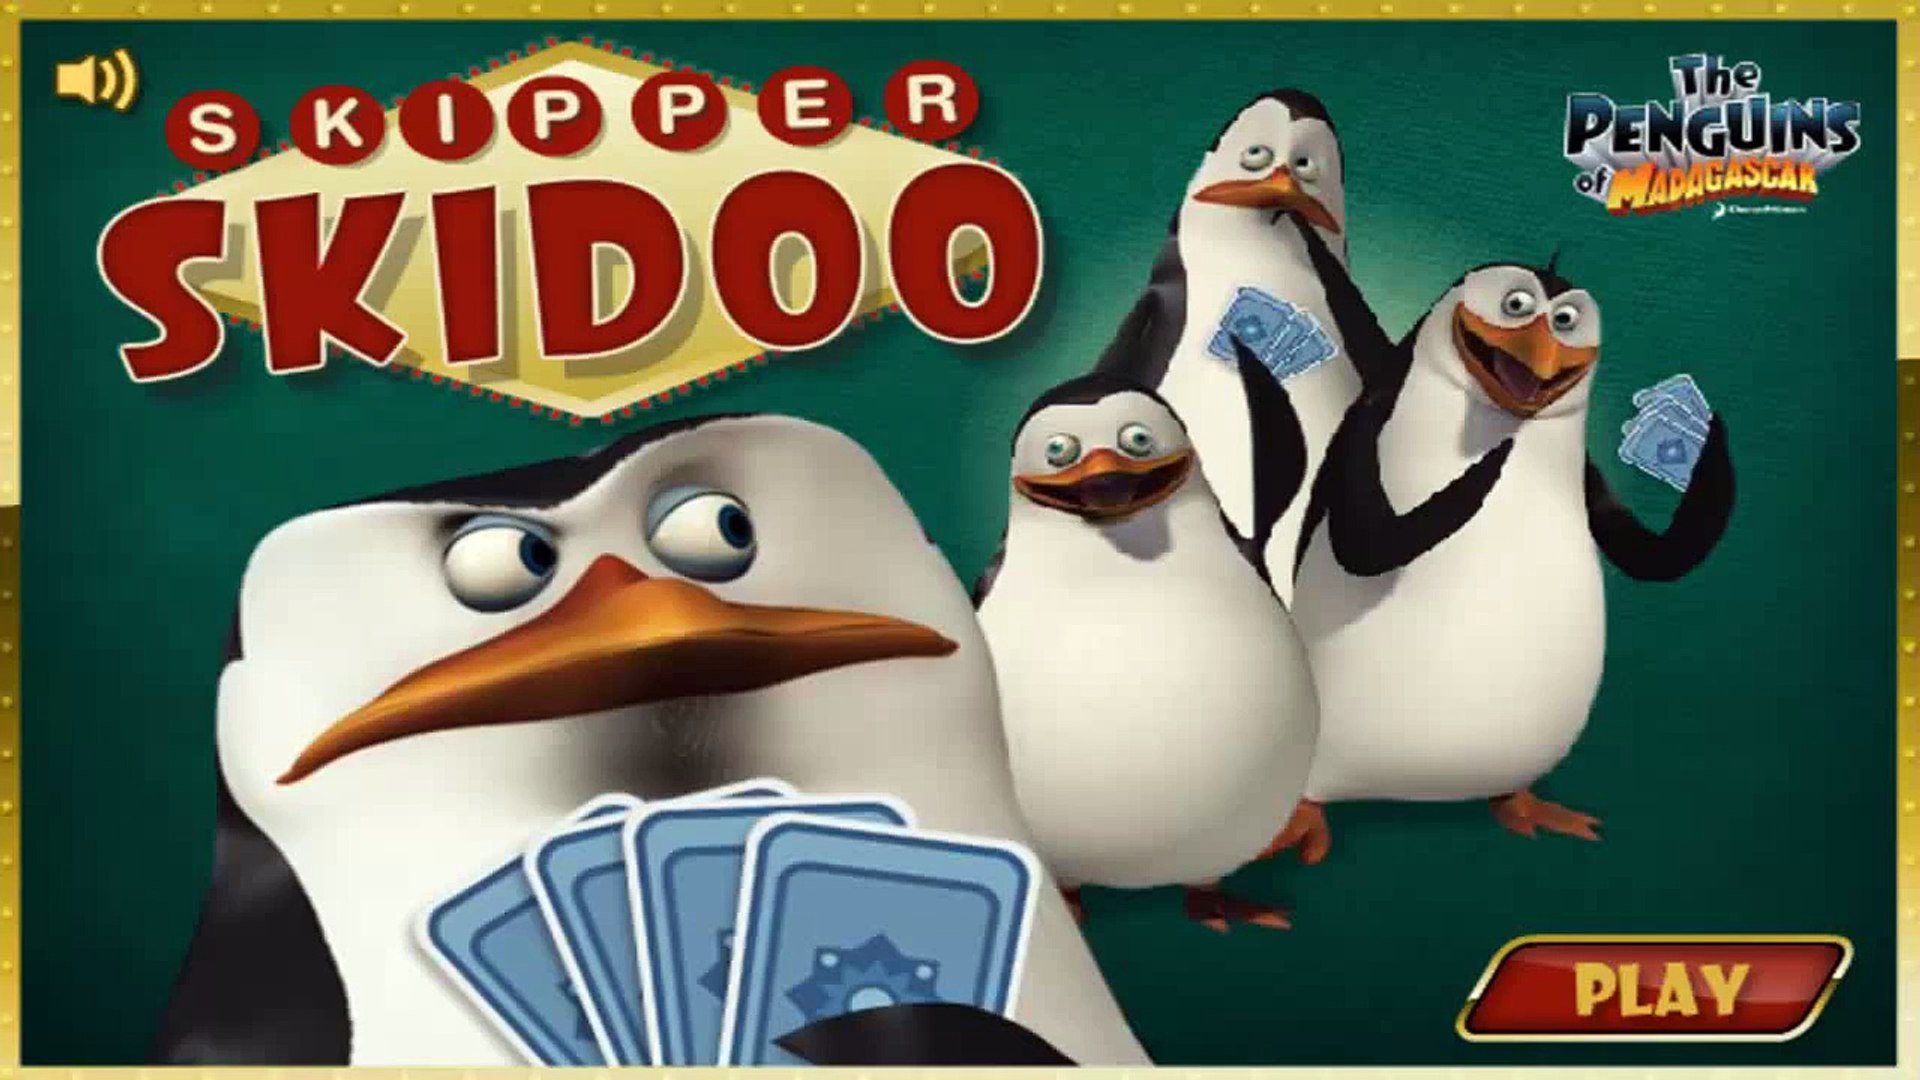 ⁣Пингвины из Мадагаскара new - Игра в Карты / The Penguins of Madagascar - Skipper Skidoo